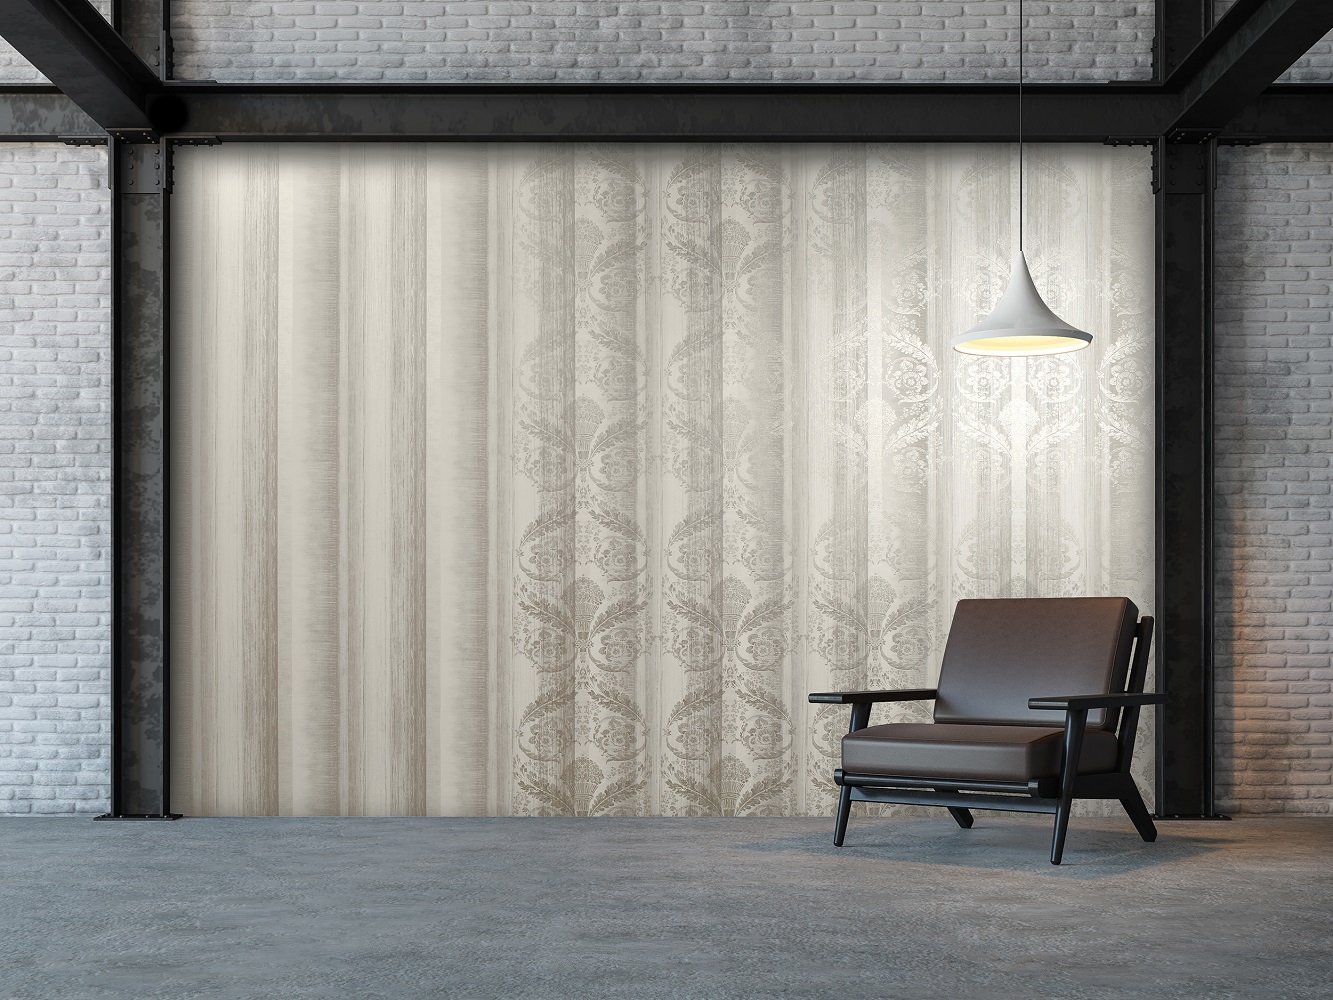 Wohnzimmer mit exklusiver Design Tapete weiss beige hell grau Streifen undd Ornamente aus Deutschland in Berlin tel. oder online kaufen